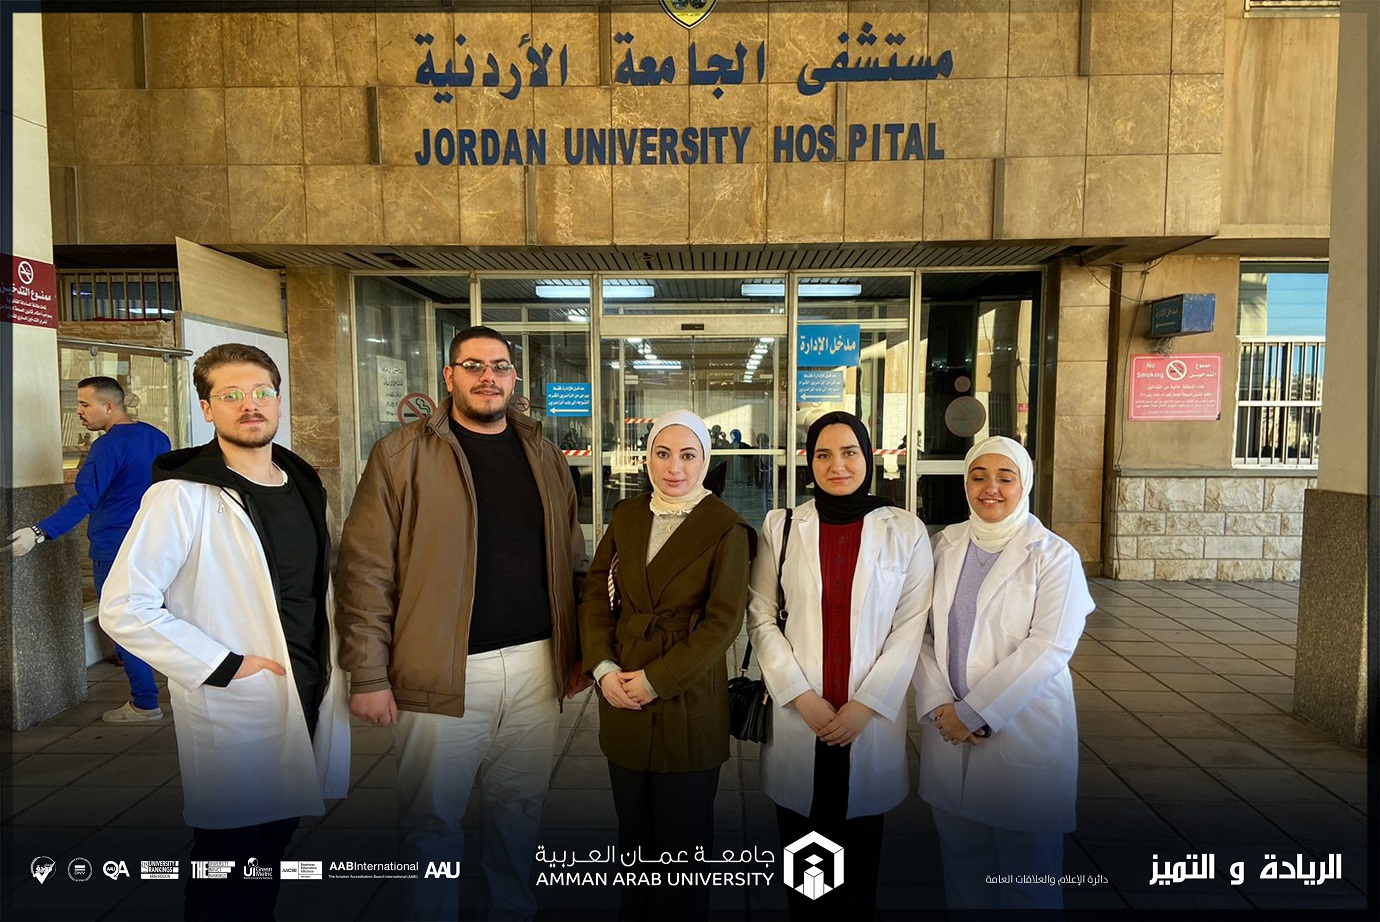 "نحو صحة أفضل" يوم توعوي لصيدلة "عمان العربية" في مستشفى الجامعة الأردنية 3